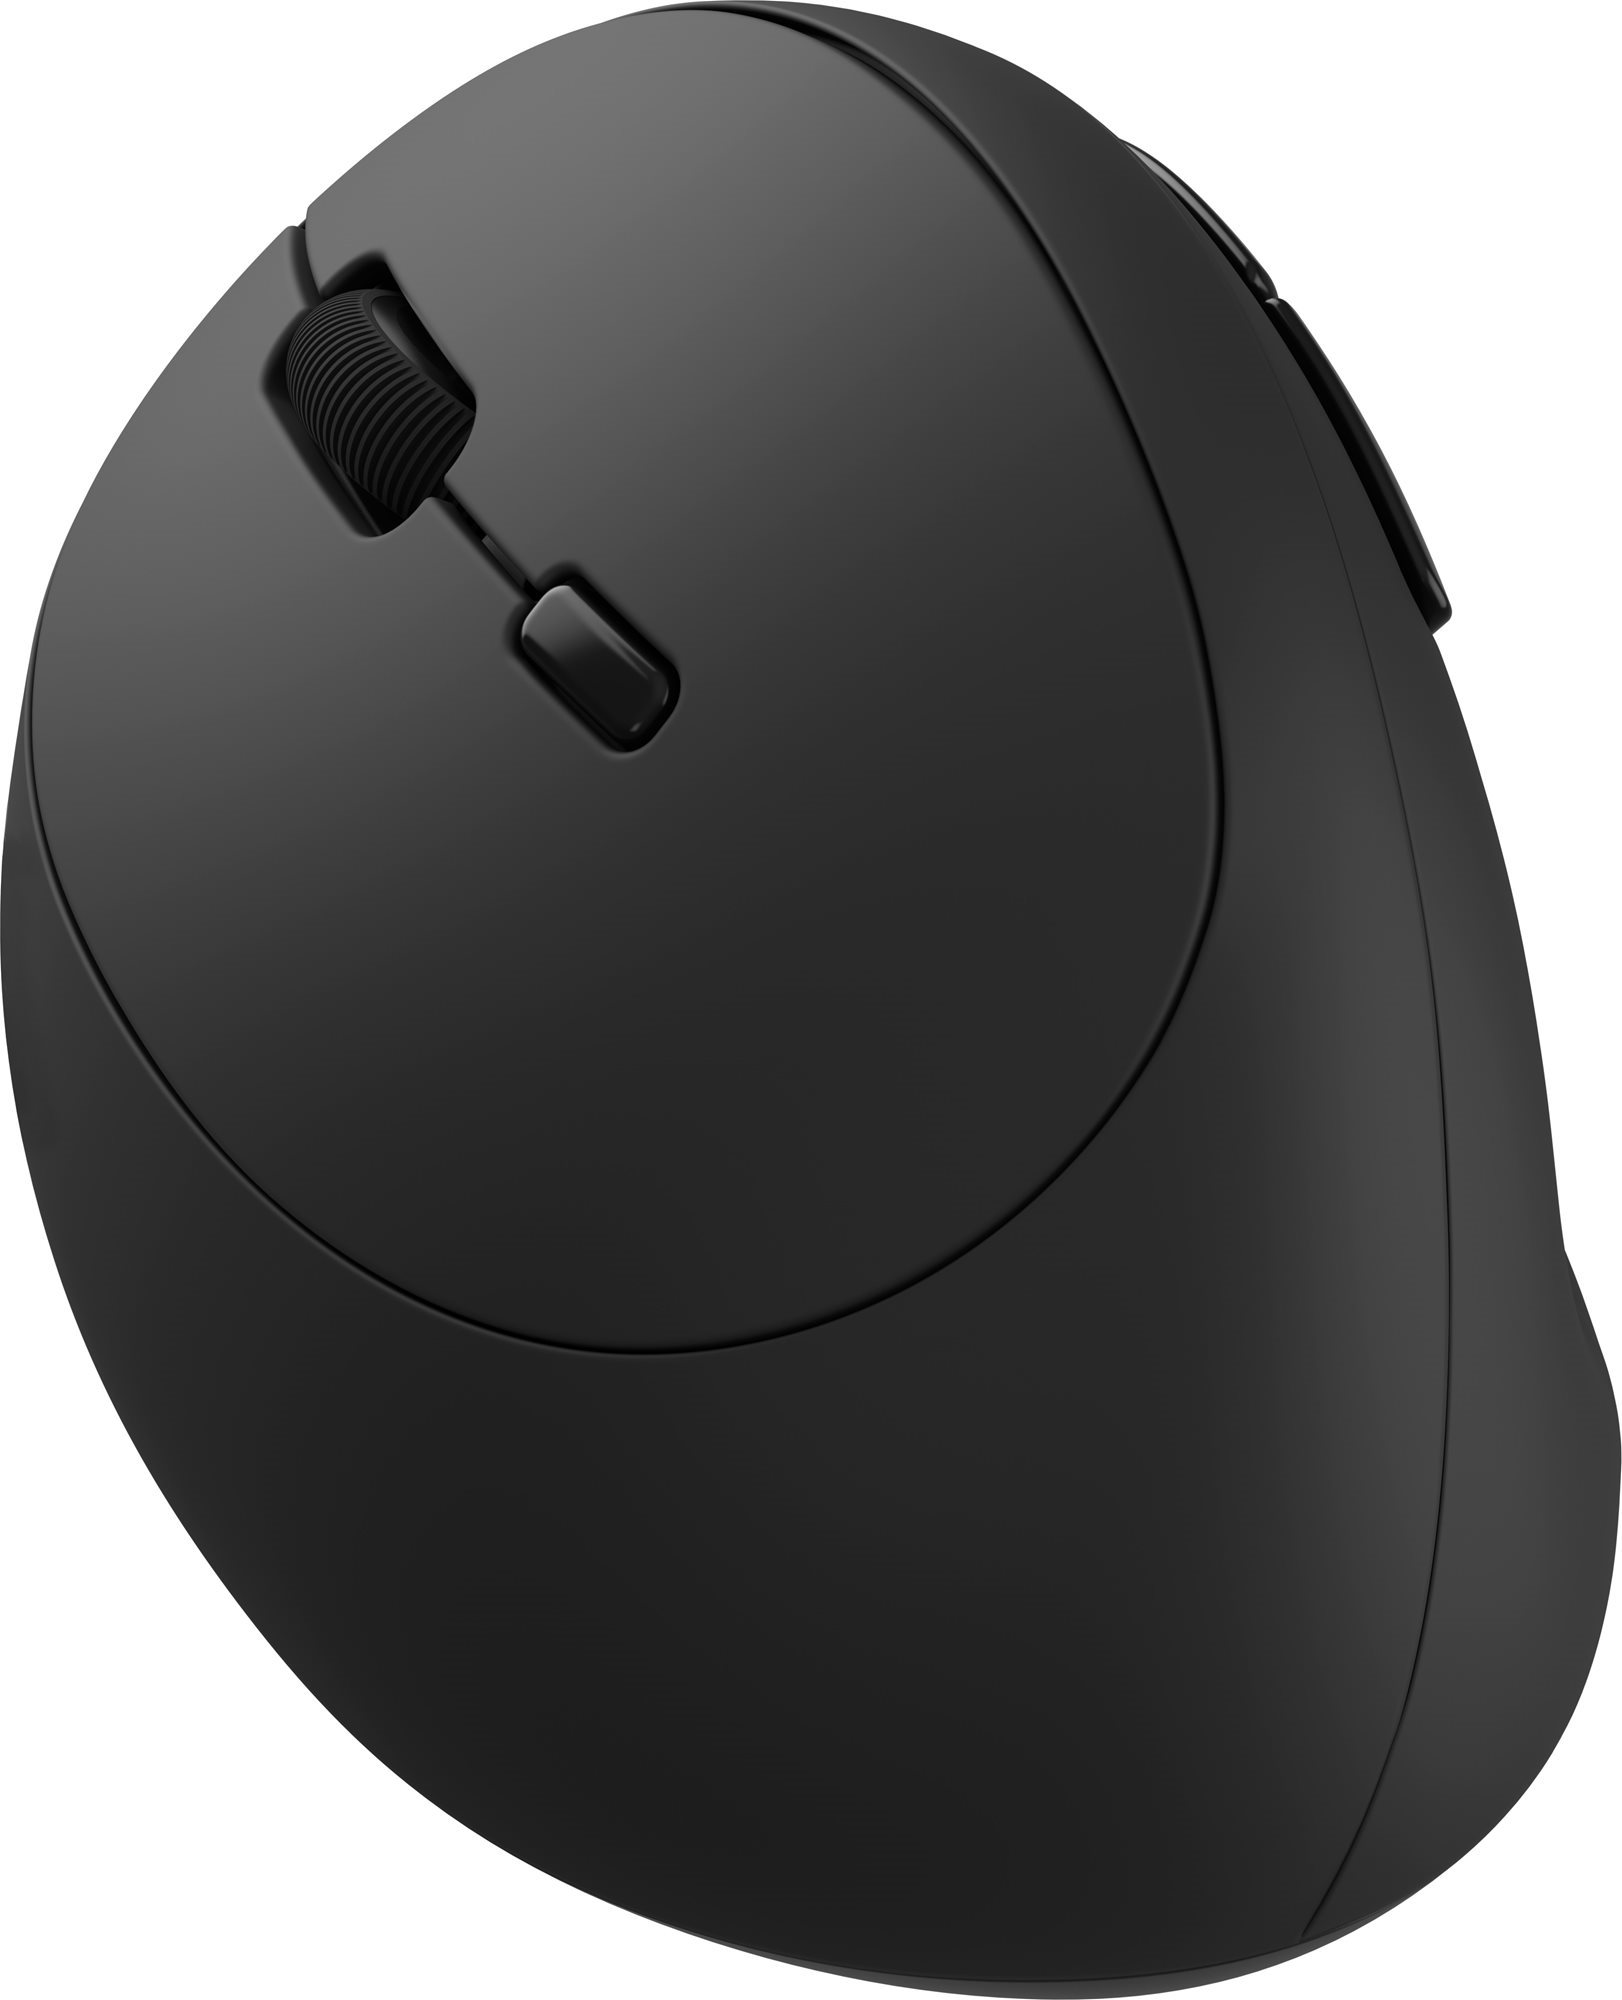 Egér Eternico Office Vertical Mouse MS310 balkezesek számára